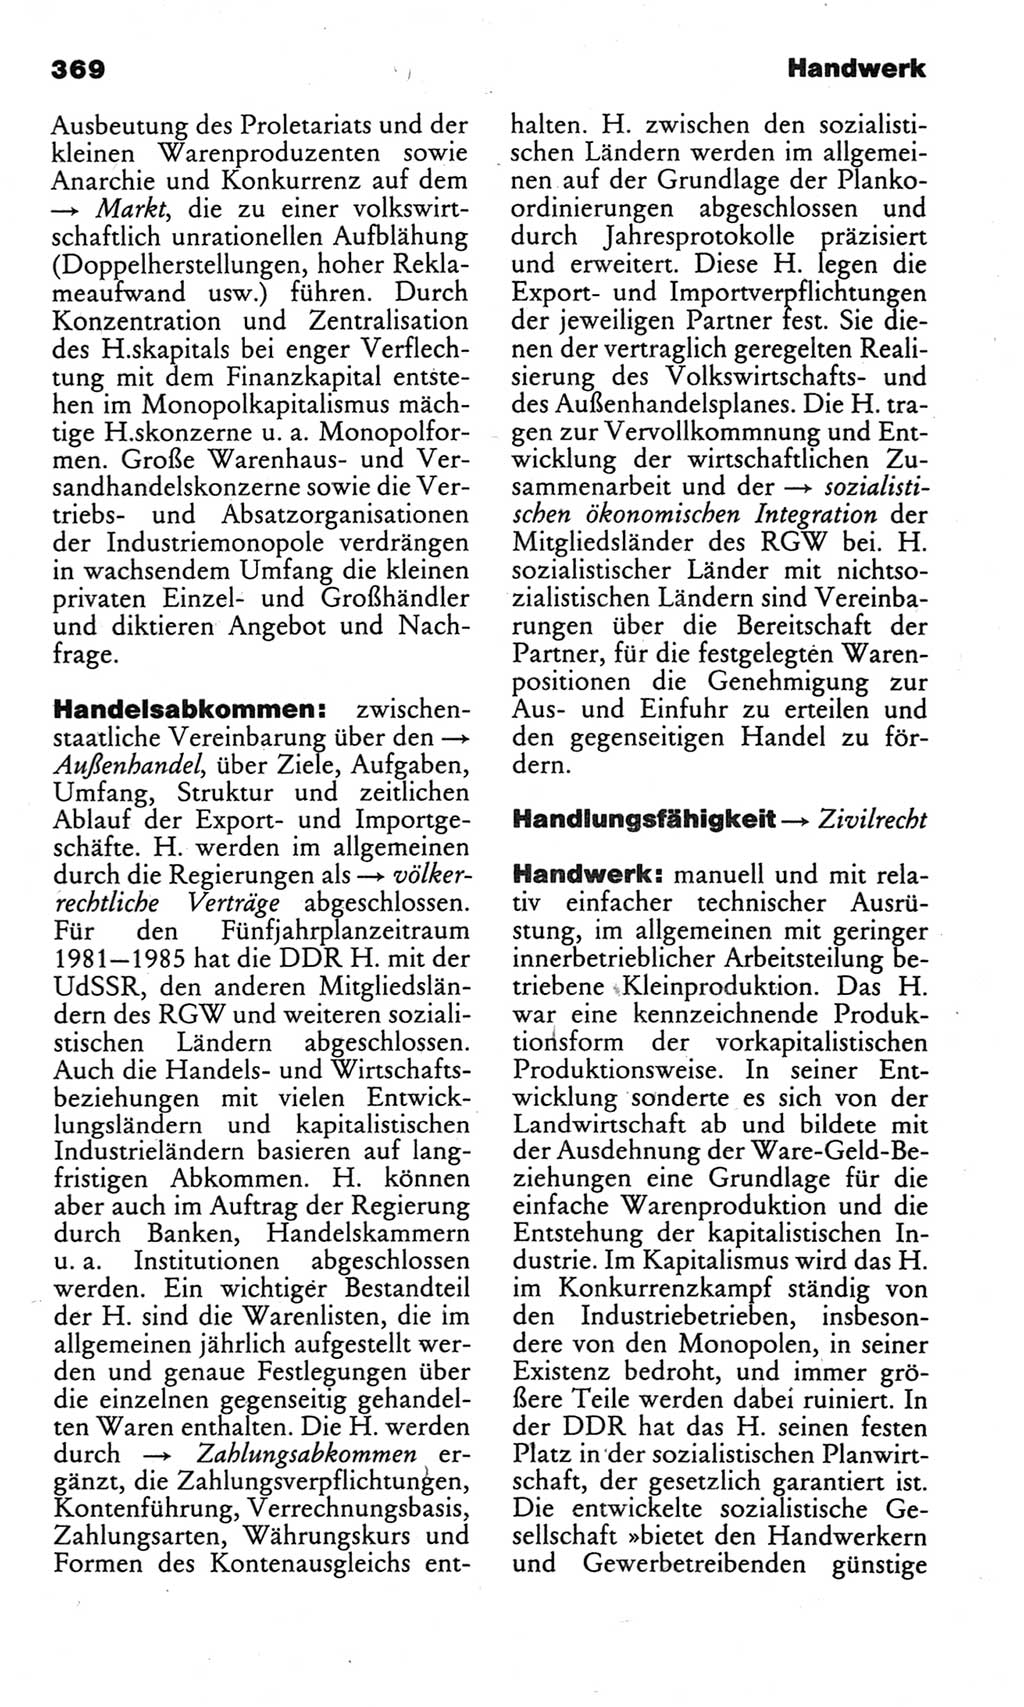 Kleines politisches Wörterbuch [Deutsche Demokratische Republik (DDR)] 1983, Seite 369 (Kl. pol. Wb. DDR 1983, S. 369)